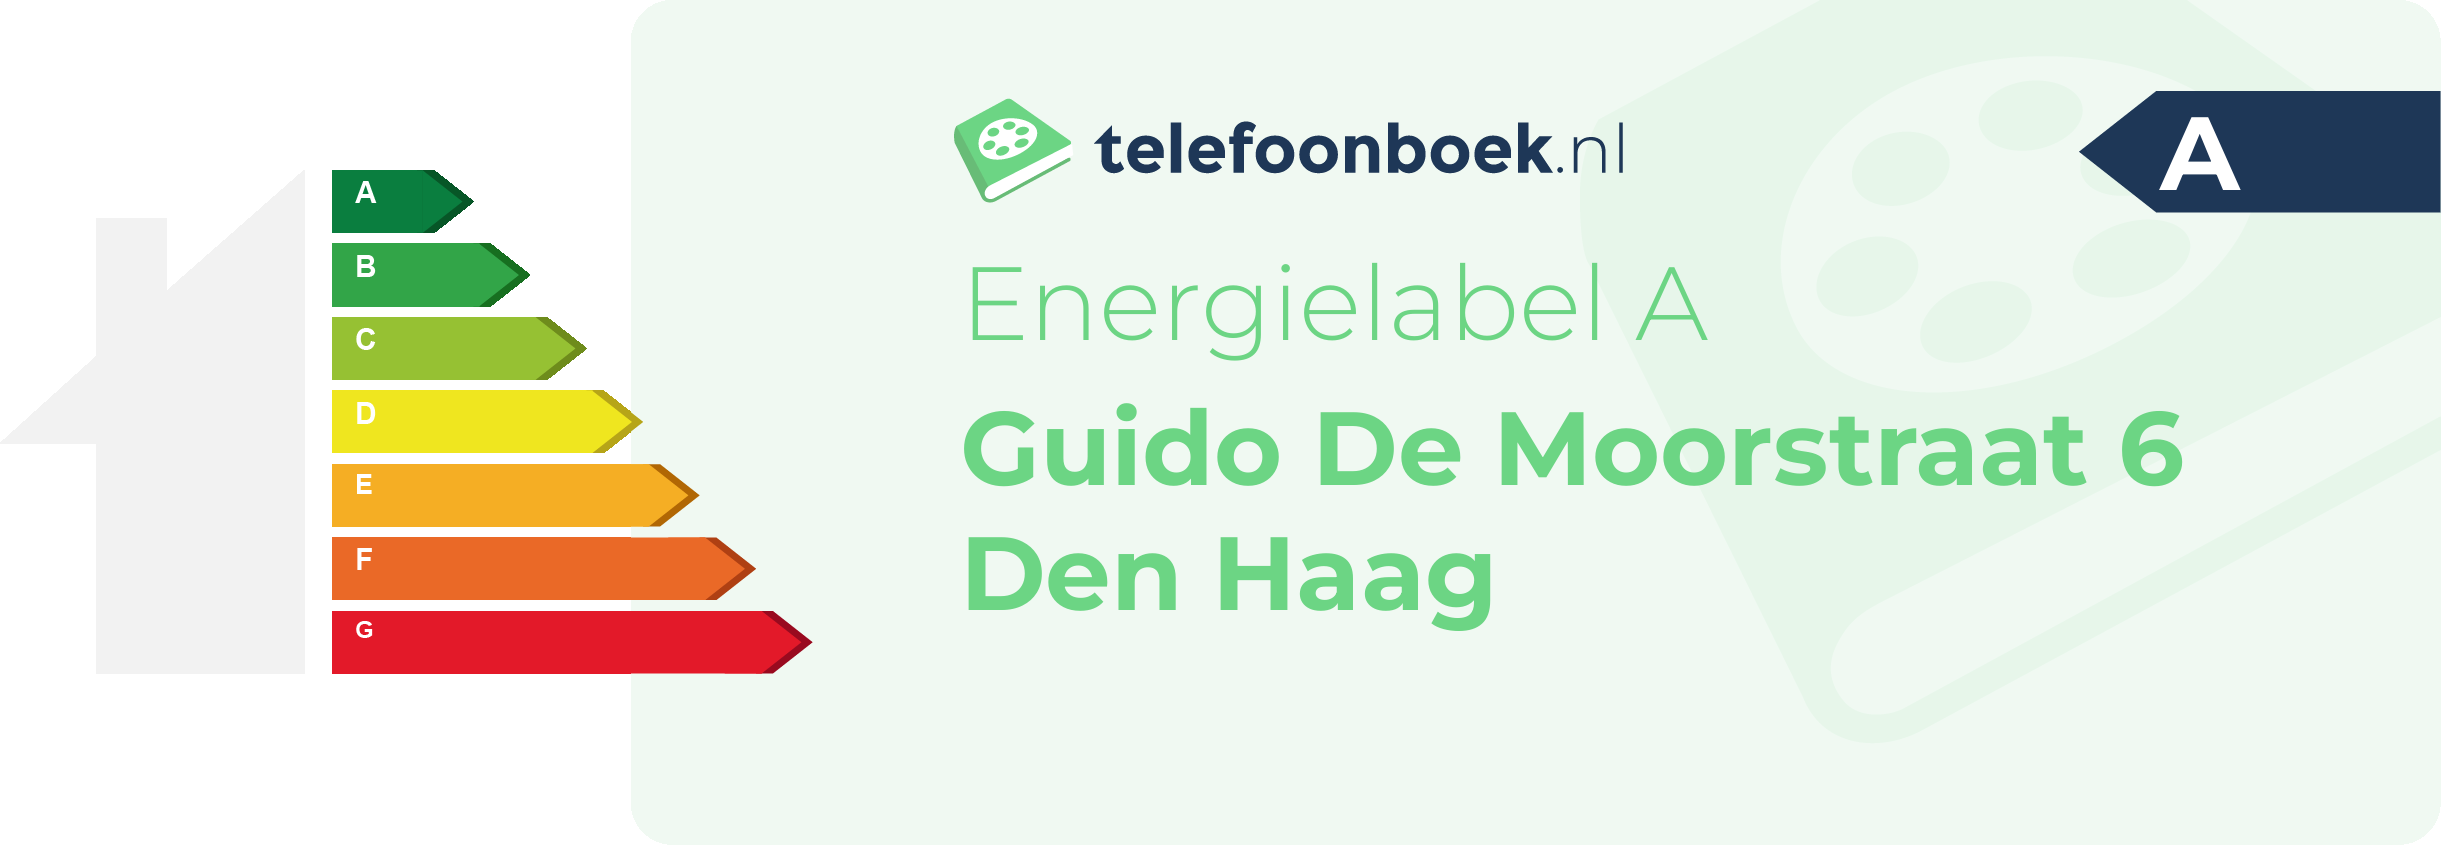 Energielabel Guido De Moorstraat 6 Den Haag